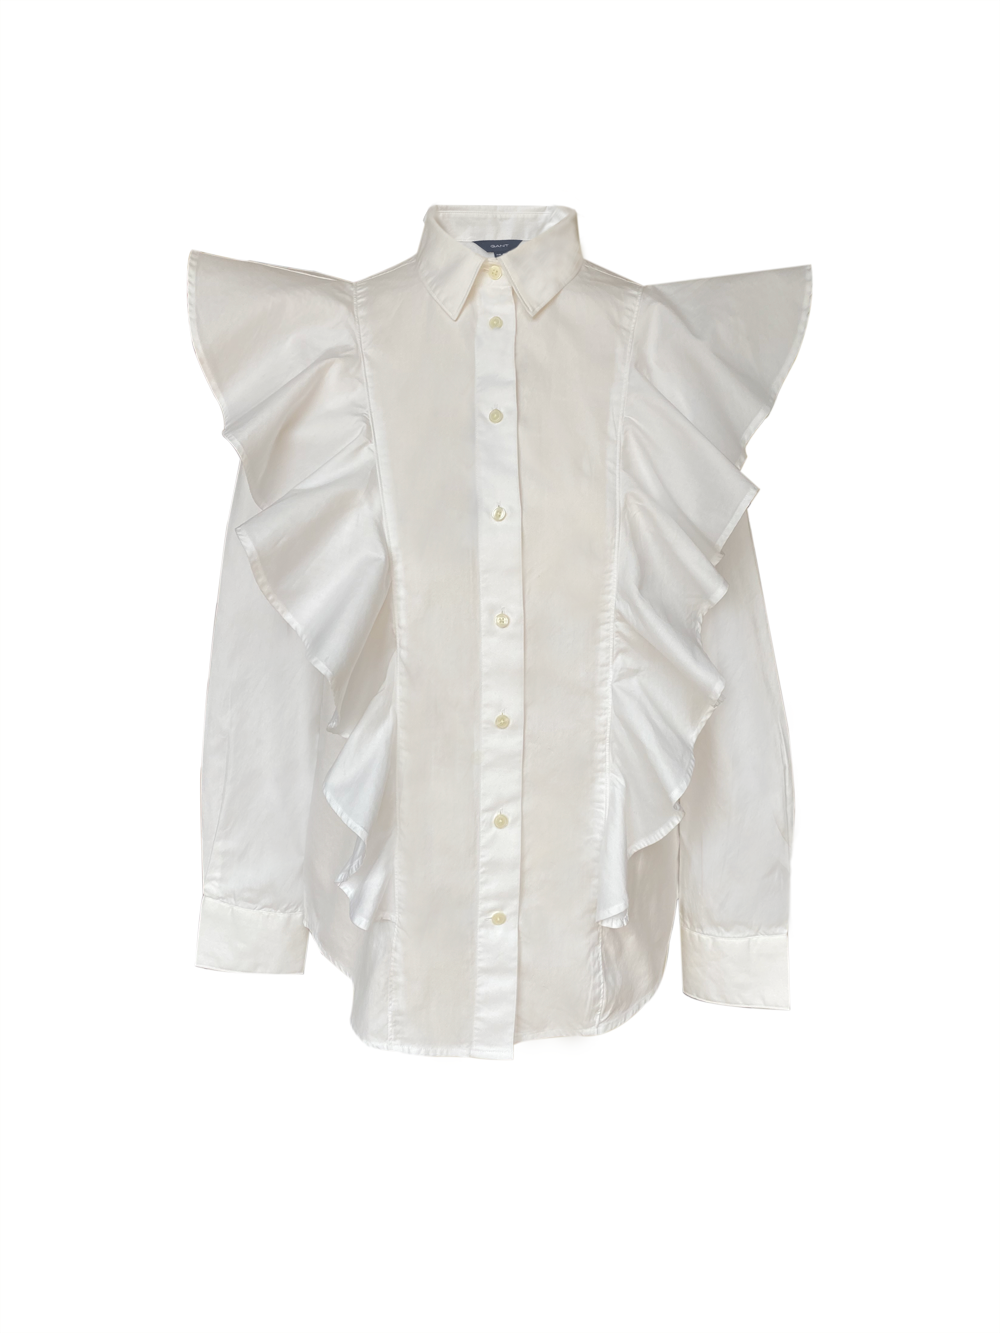 GANT white cotton frill shirt